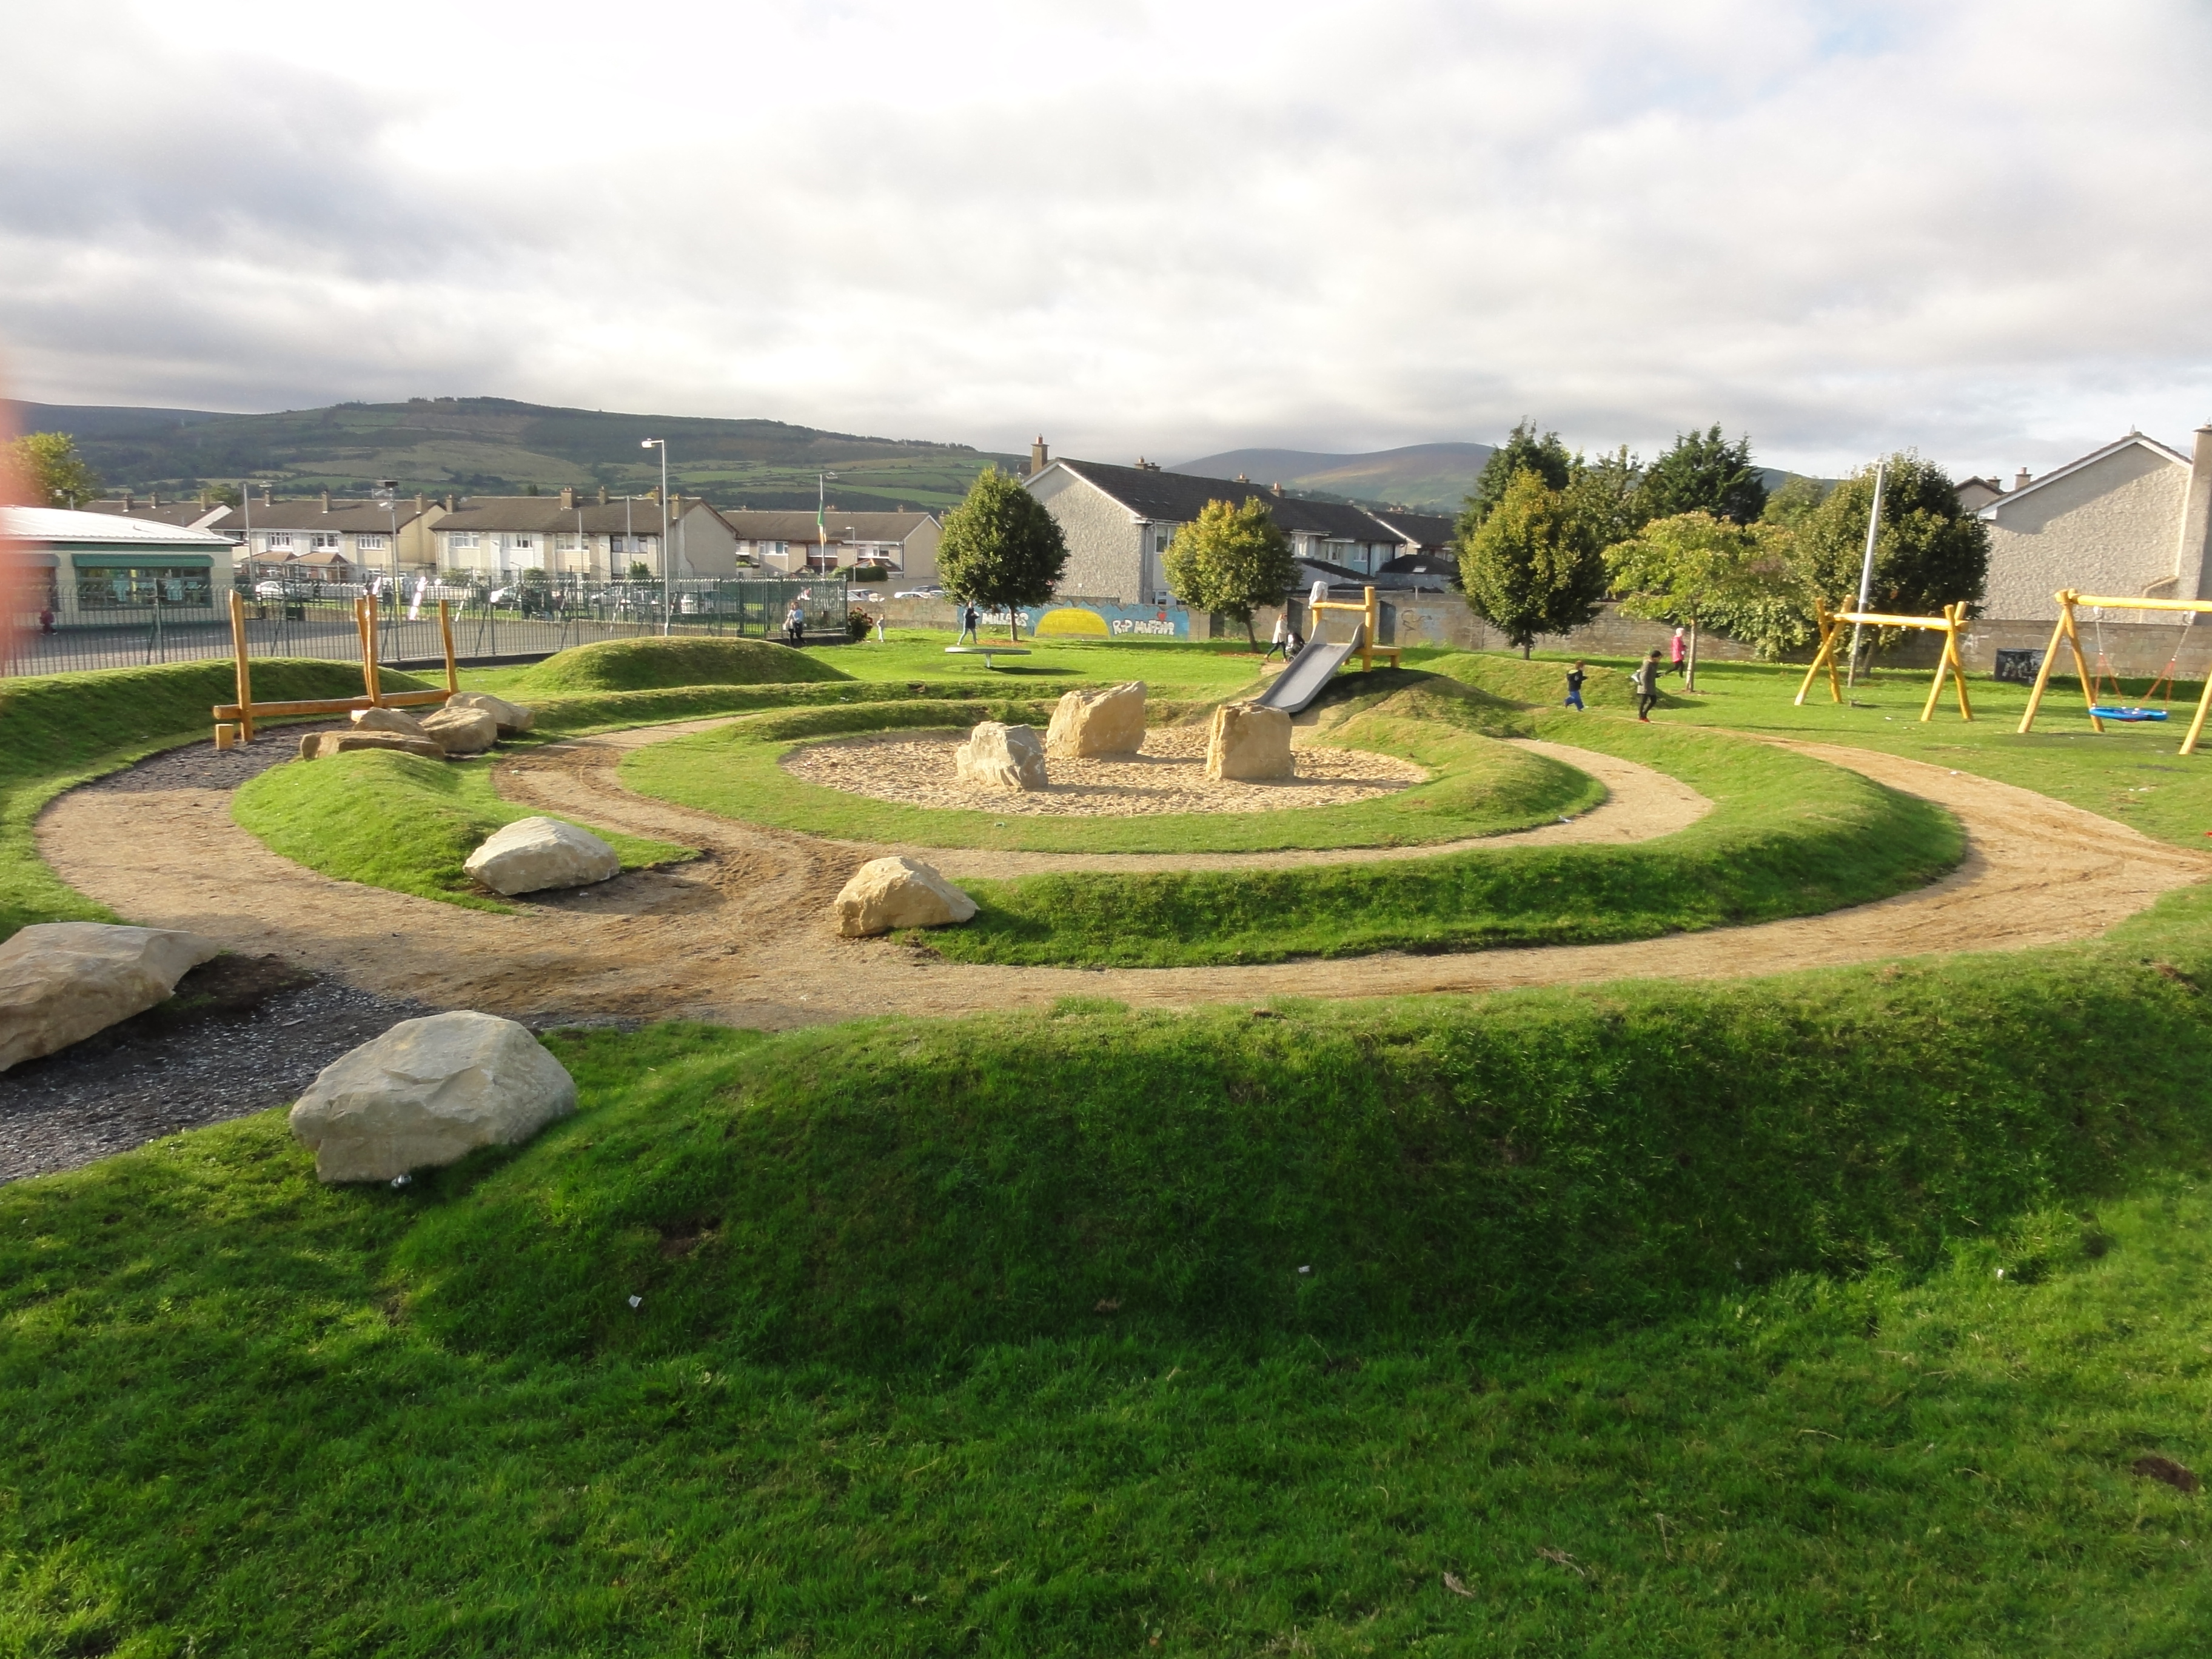 Playground for Avonbeg in Dublin